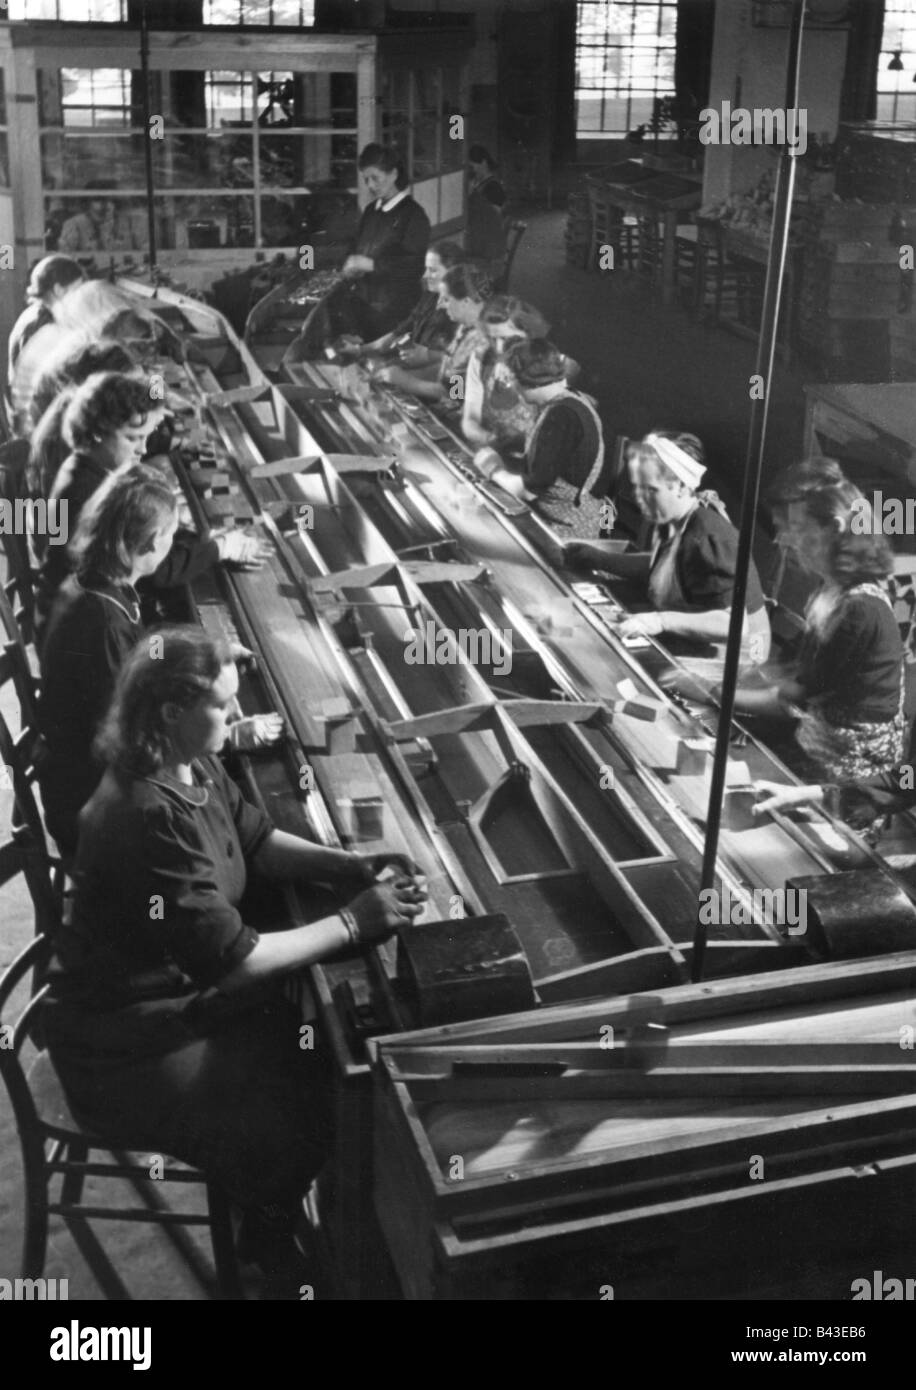 Eventos, Segunda Guerra Mundial / Segunda Guerra Mundial, Alemania, industria armamentística, producción de municiones, mujeres de embalaje, Berlín, 1942, propagada foto, Foto de stock